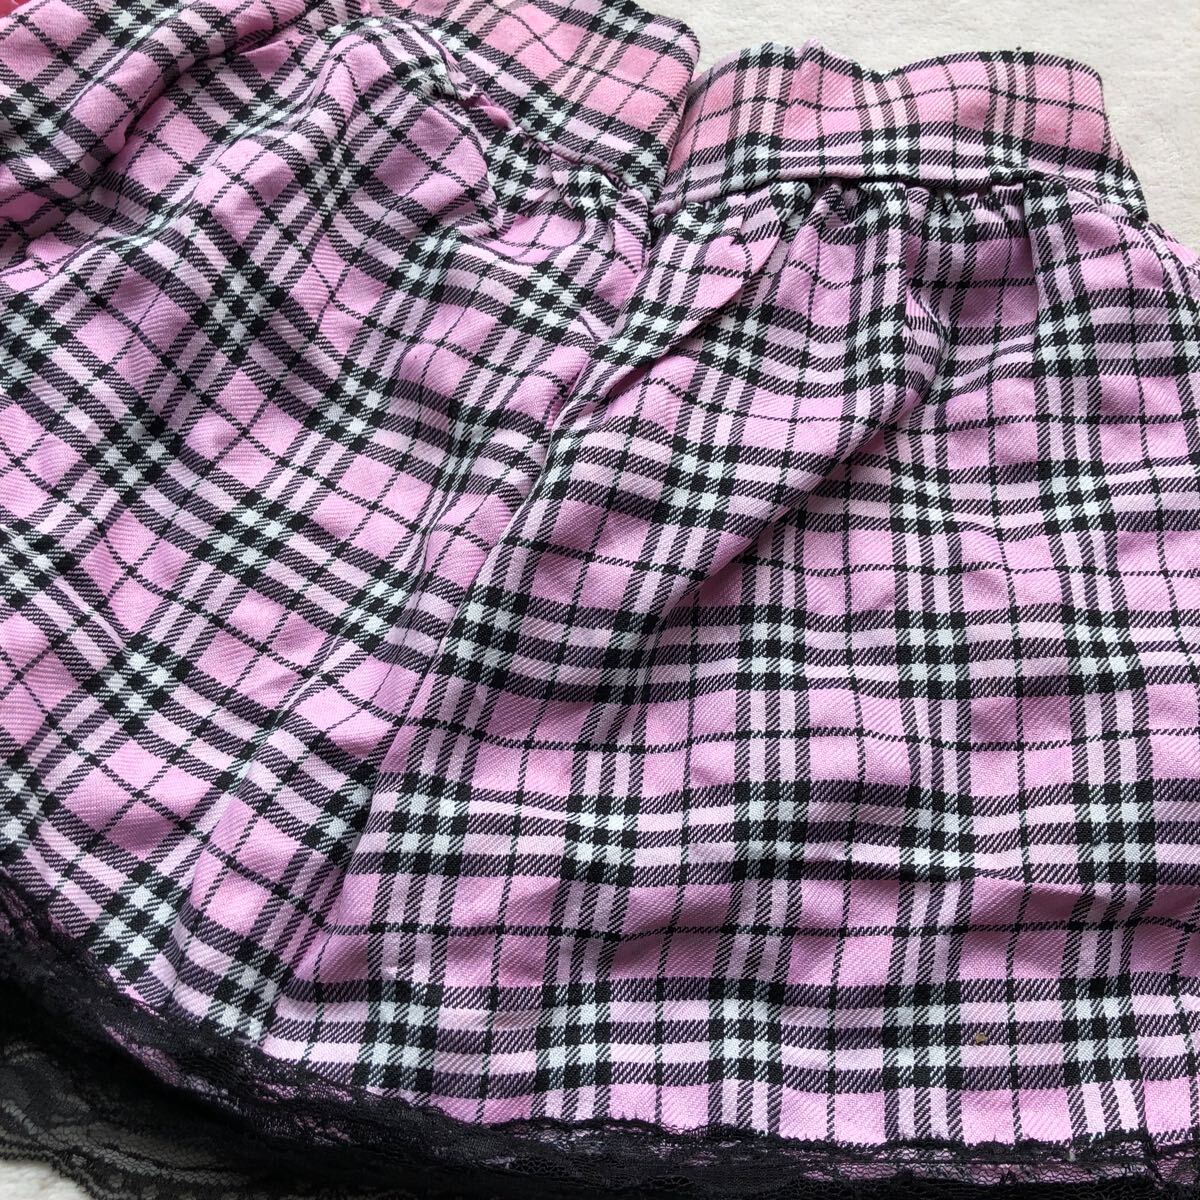 新品 愛される予感 ピンク ブラック チェック スカート コスプレ コスチューム エロ可愛い 誘惑 セクシー レディース下着の画像2